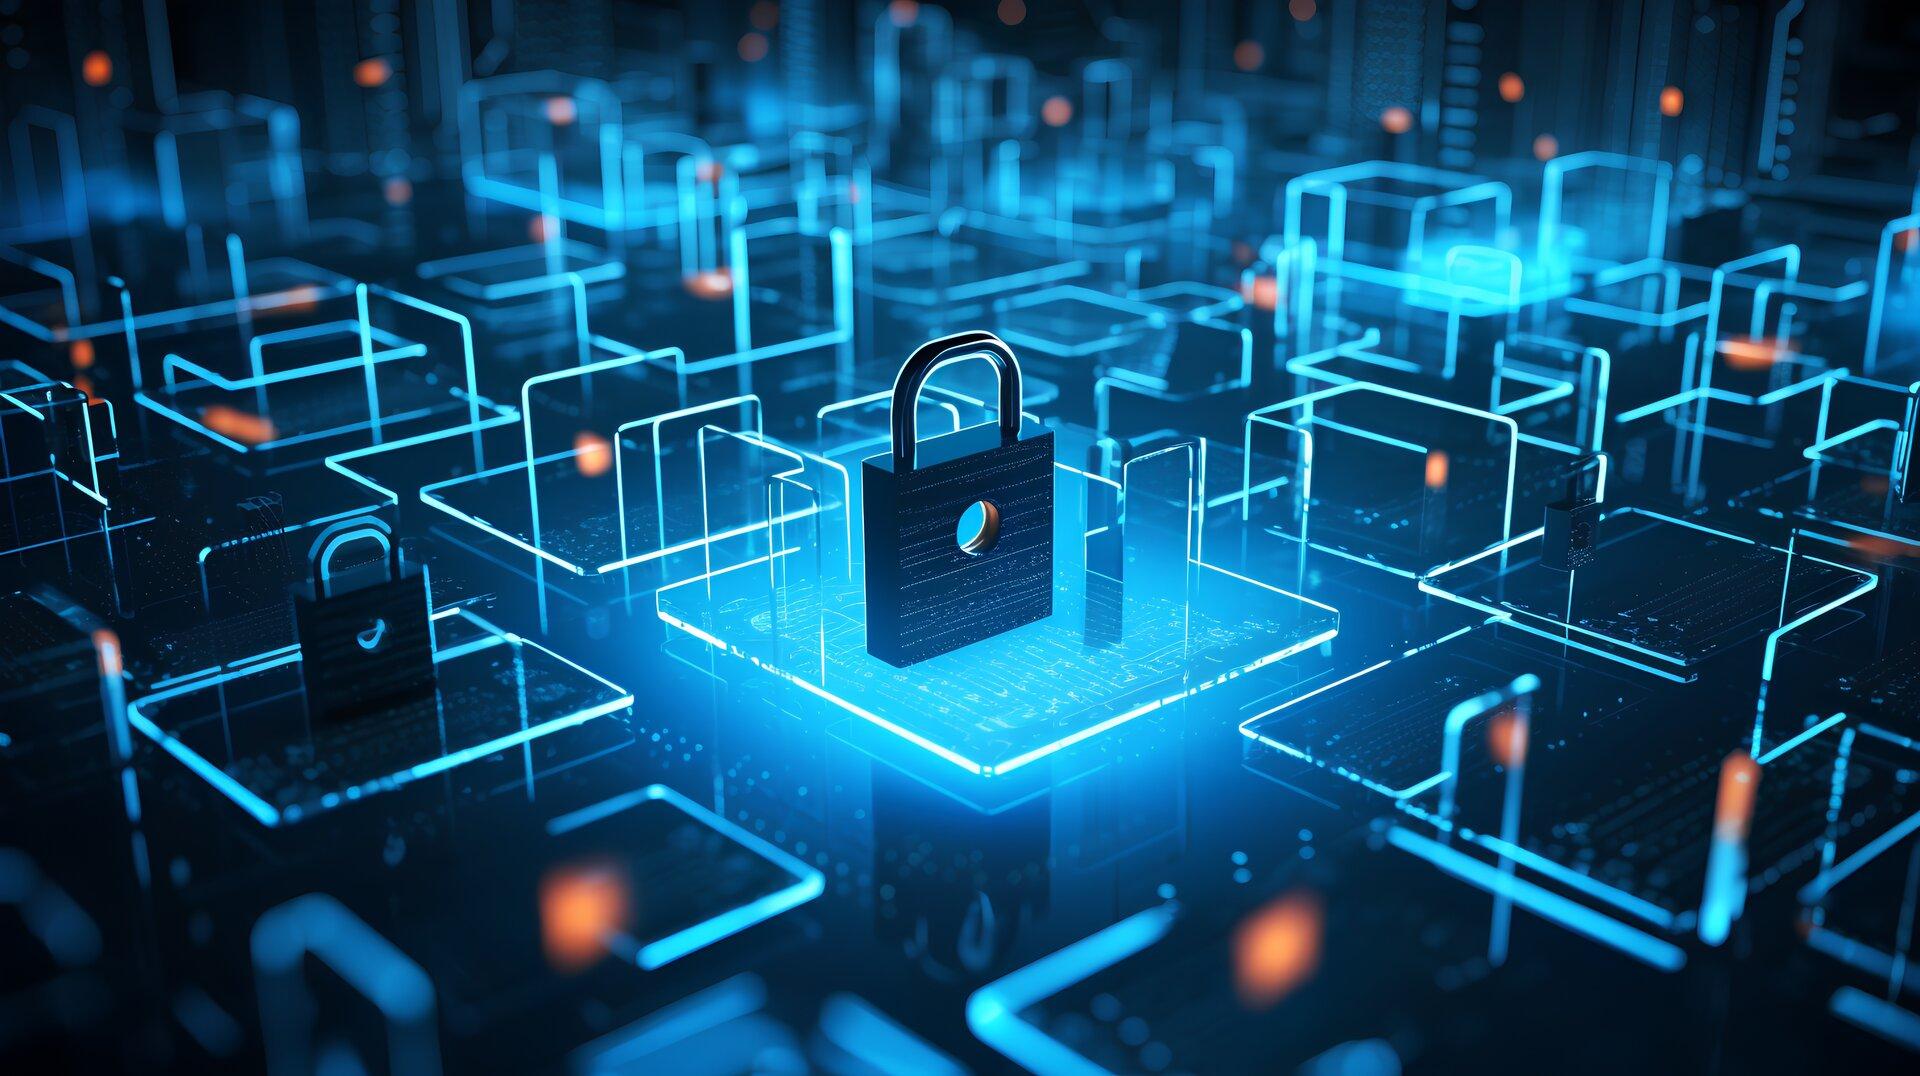 Endgerätesicherheit ist ein entscheidender Aspekt der Cyberabwehr und bietet Schutz auf Geräteebene vor Bedrohungen, Datenverletzungen und unbefugtem Zugriff.